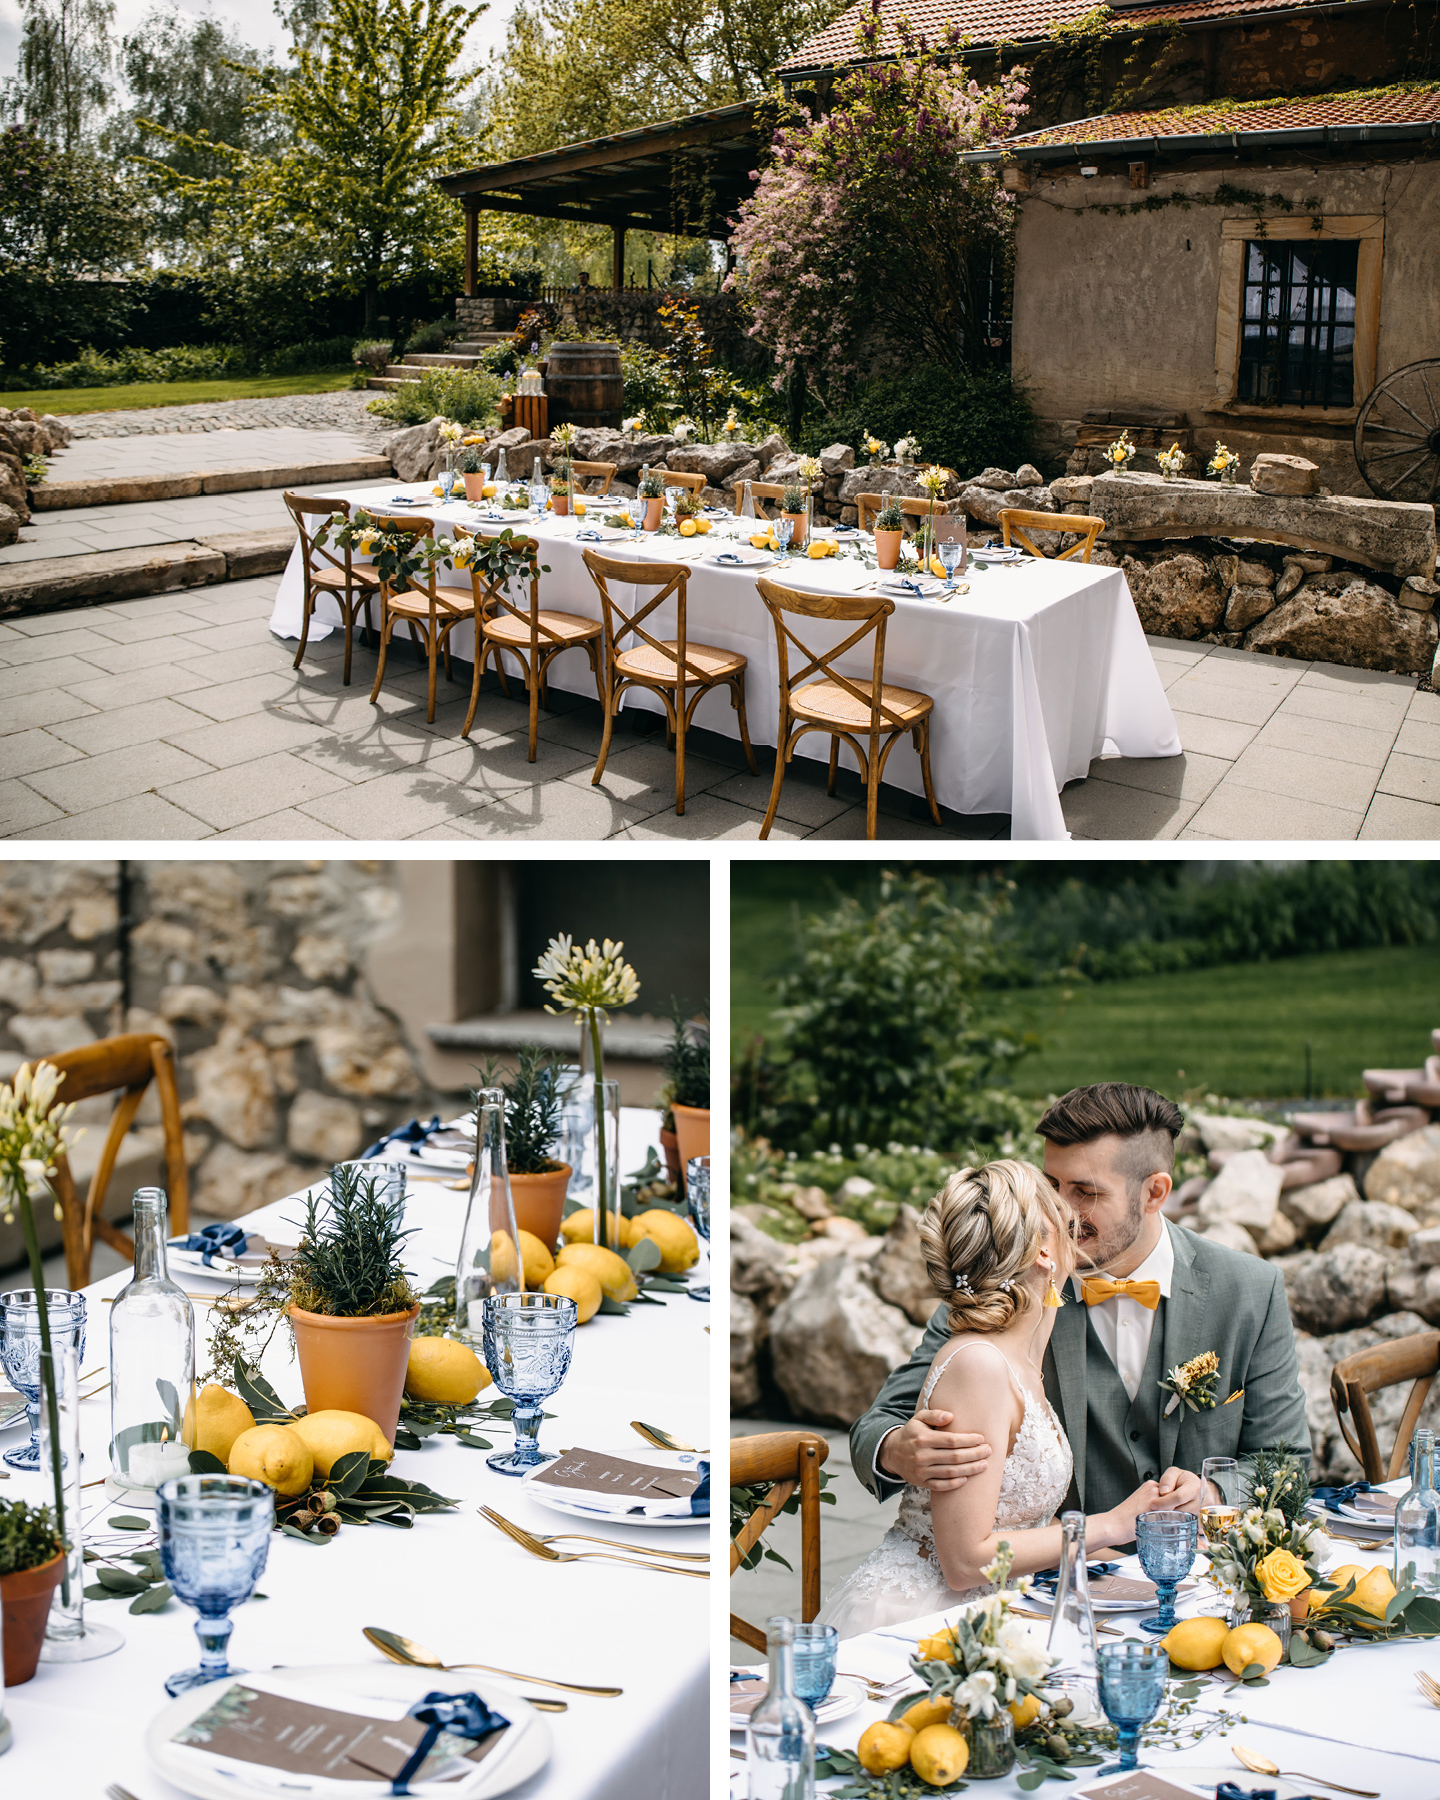 Hochzeitstafel am Weingut ist in Weiß und Blau dekoriert. Zitronen und grüne Blätter sorgen für Italien-Feeling.